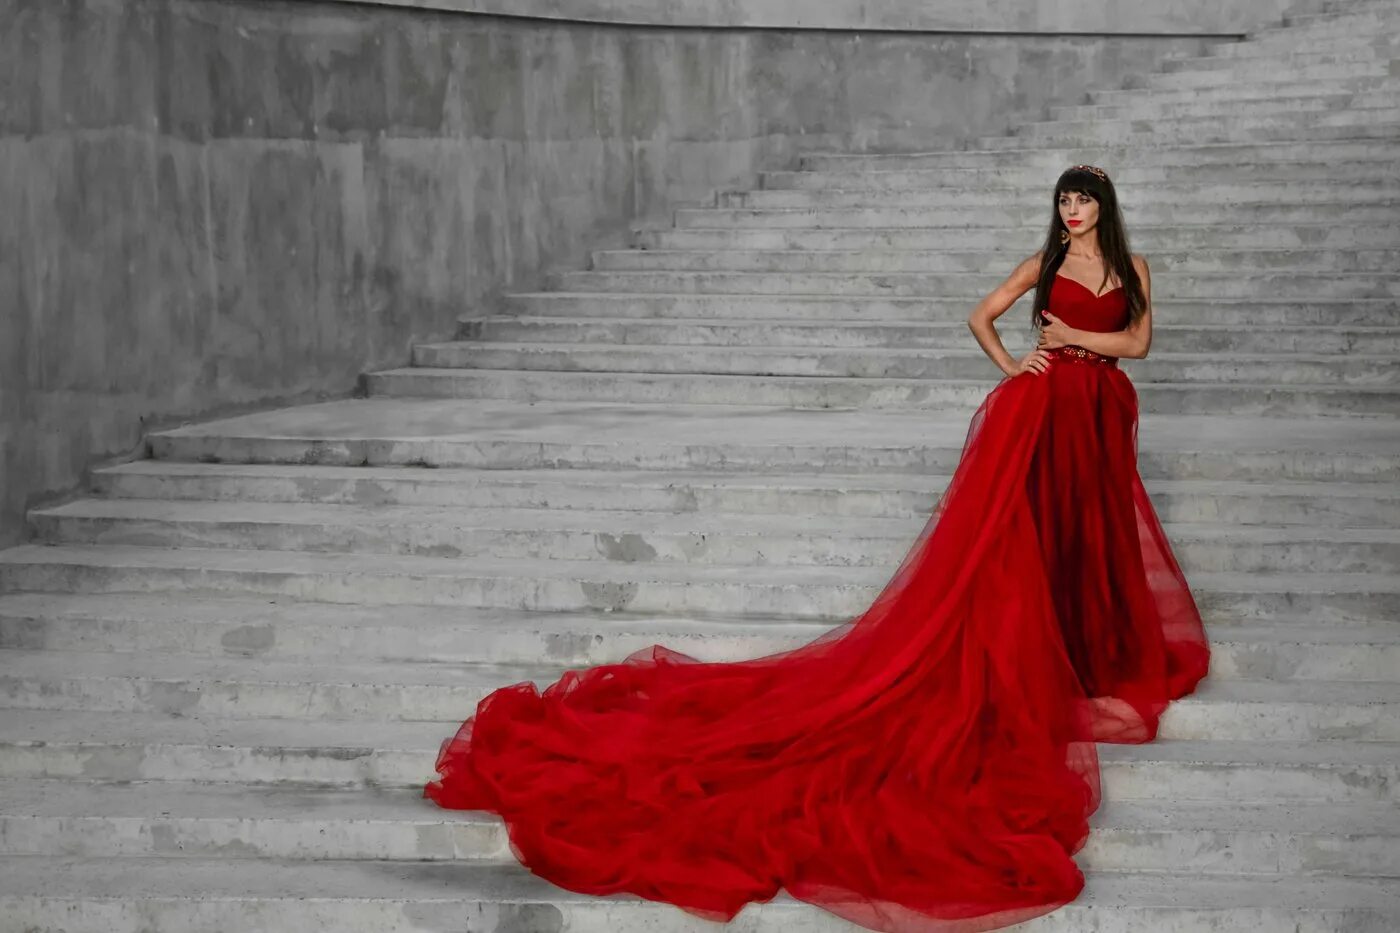 Фото девушки в красном платье. Девушка в Вечернем платье. Платье с длинным шлейфом. Красивые платья для девушек длинные. Девушка в длинном платье.